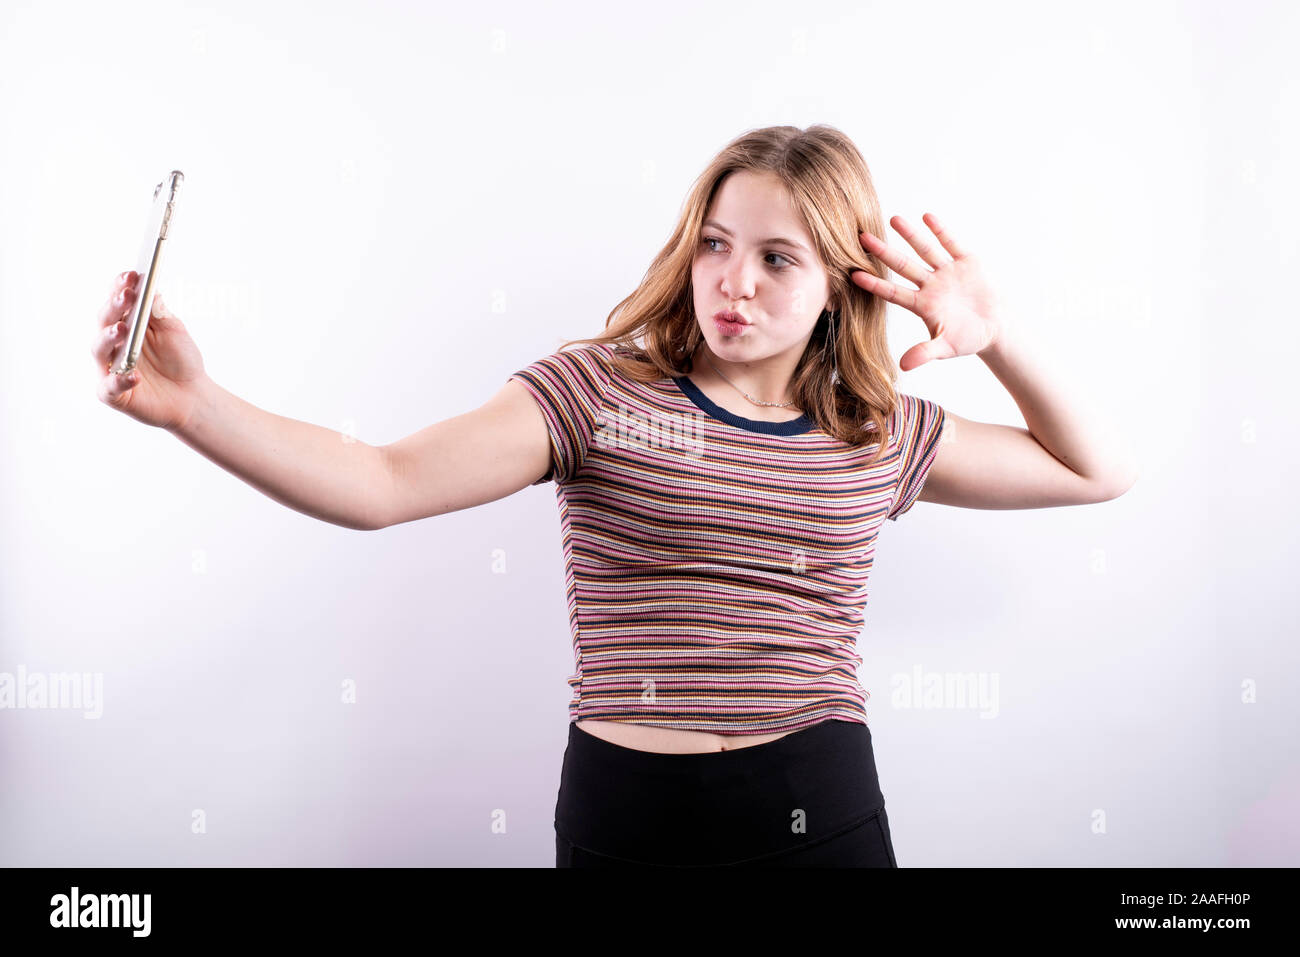 Caucasian ragazza adolescente che indossa un rigato orizzontale T-shirt prendendo un drammatico selfie con uno smartphone contro uno sfondo bianco Foto Stock